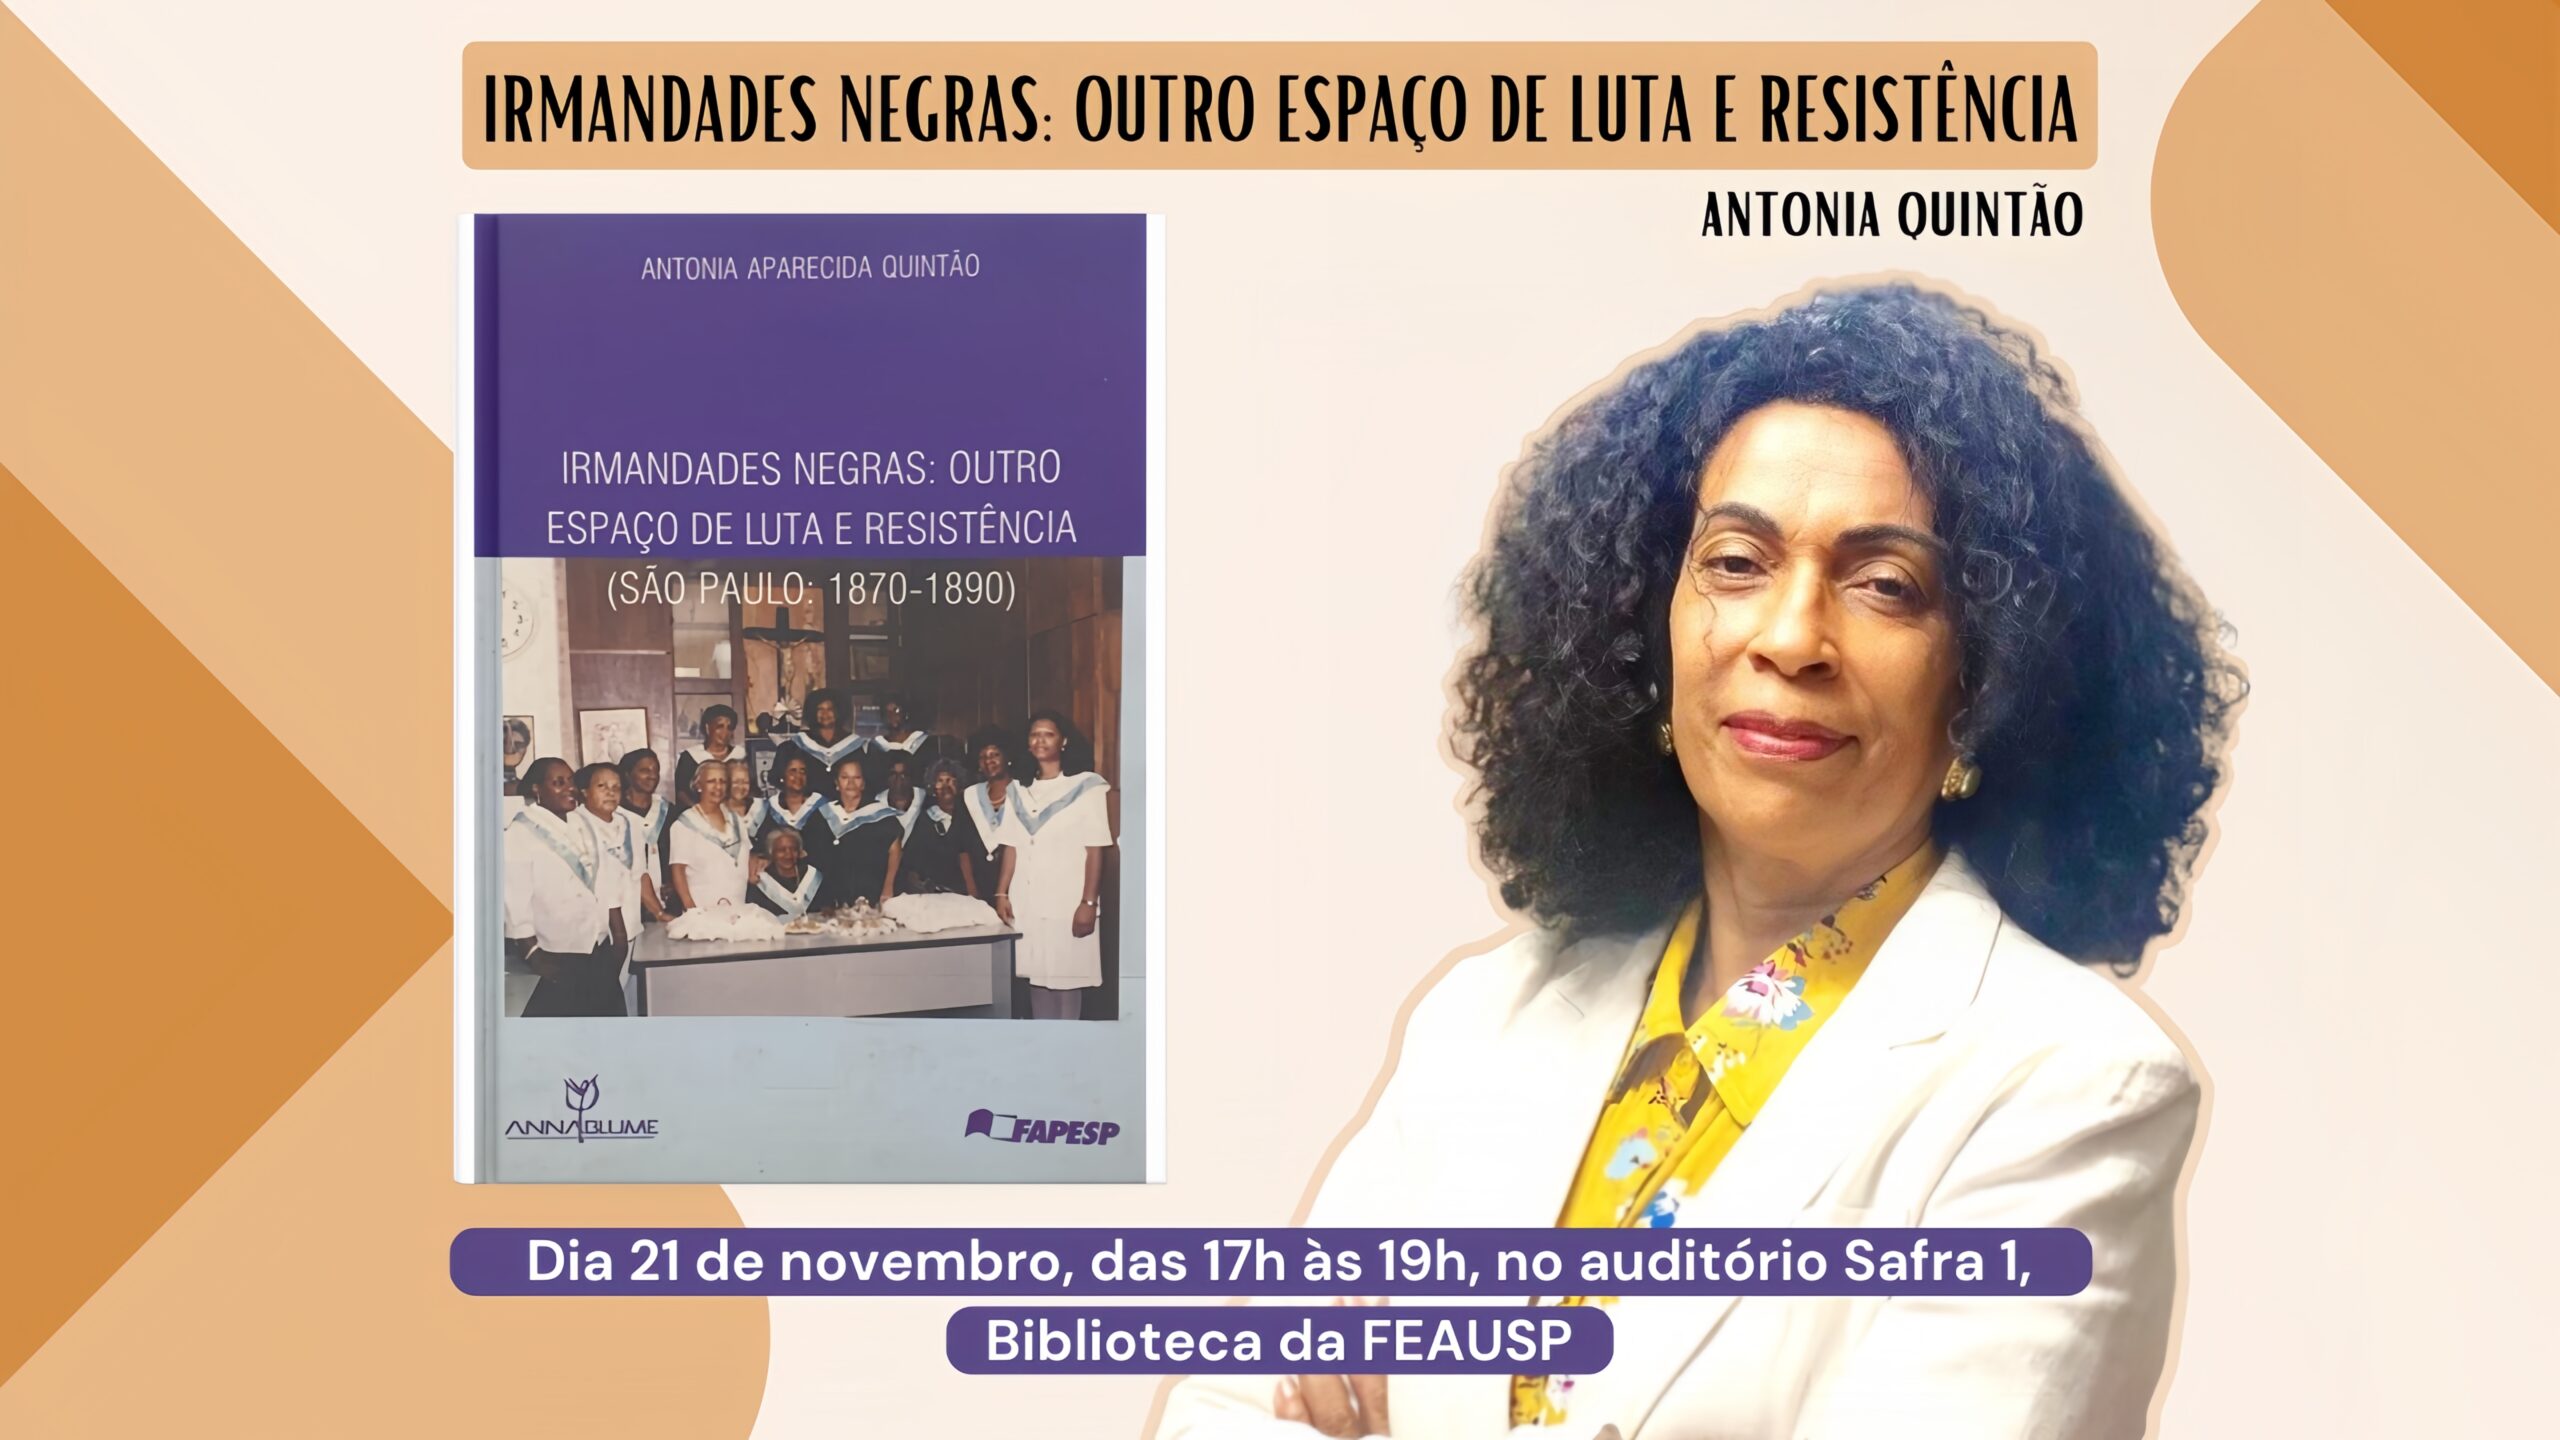 Lançamento do Livro IRMANDADES NEGRAS: OUTRO ESPAÇO DE LUTA E RESISTÊNCIA da Professora Antonia Quintão, na Semana da Consciência Negra